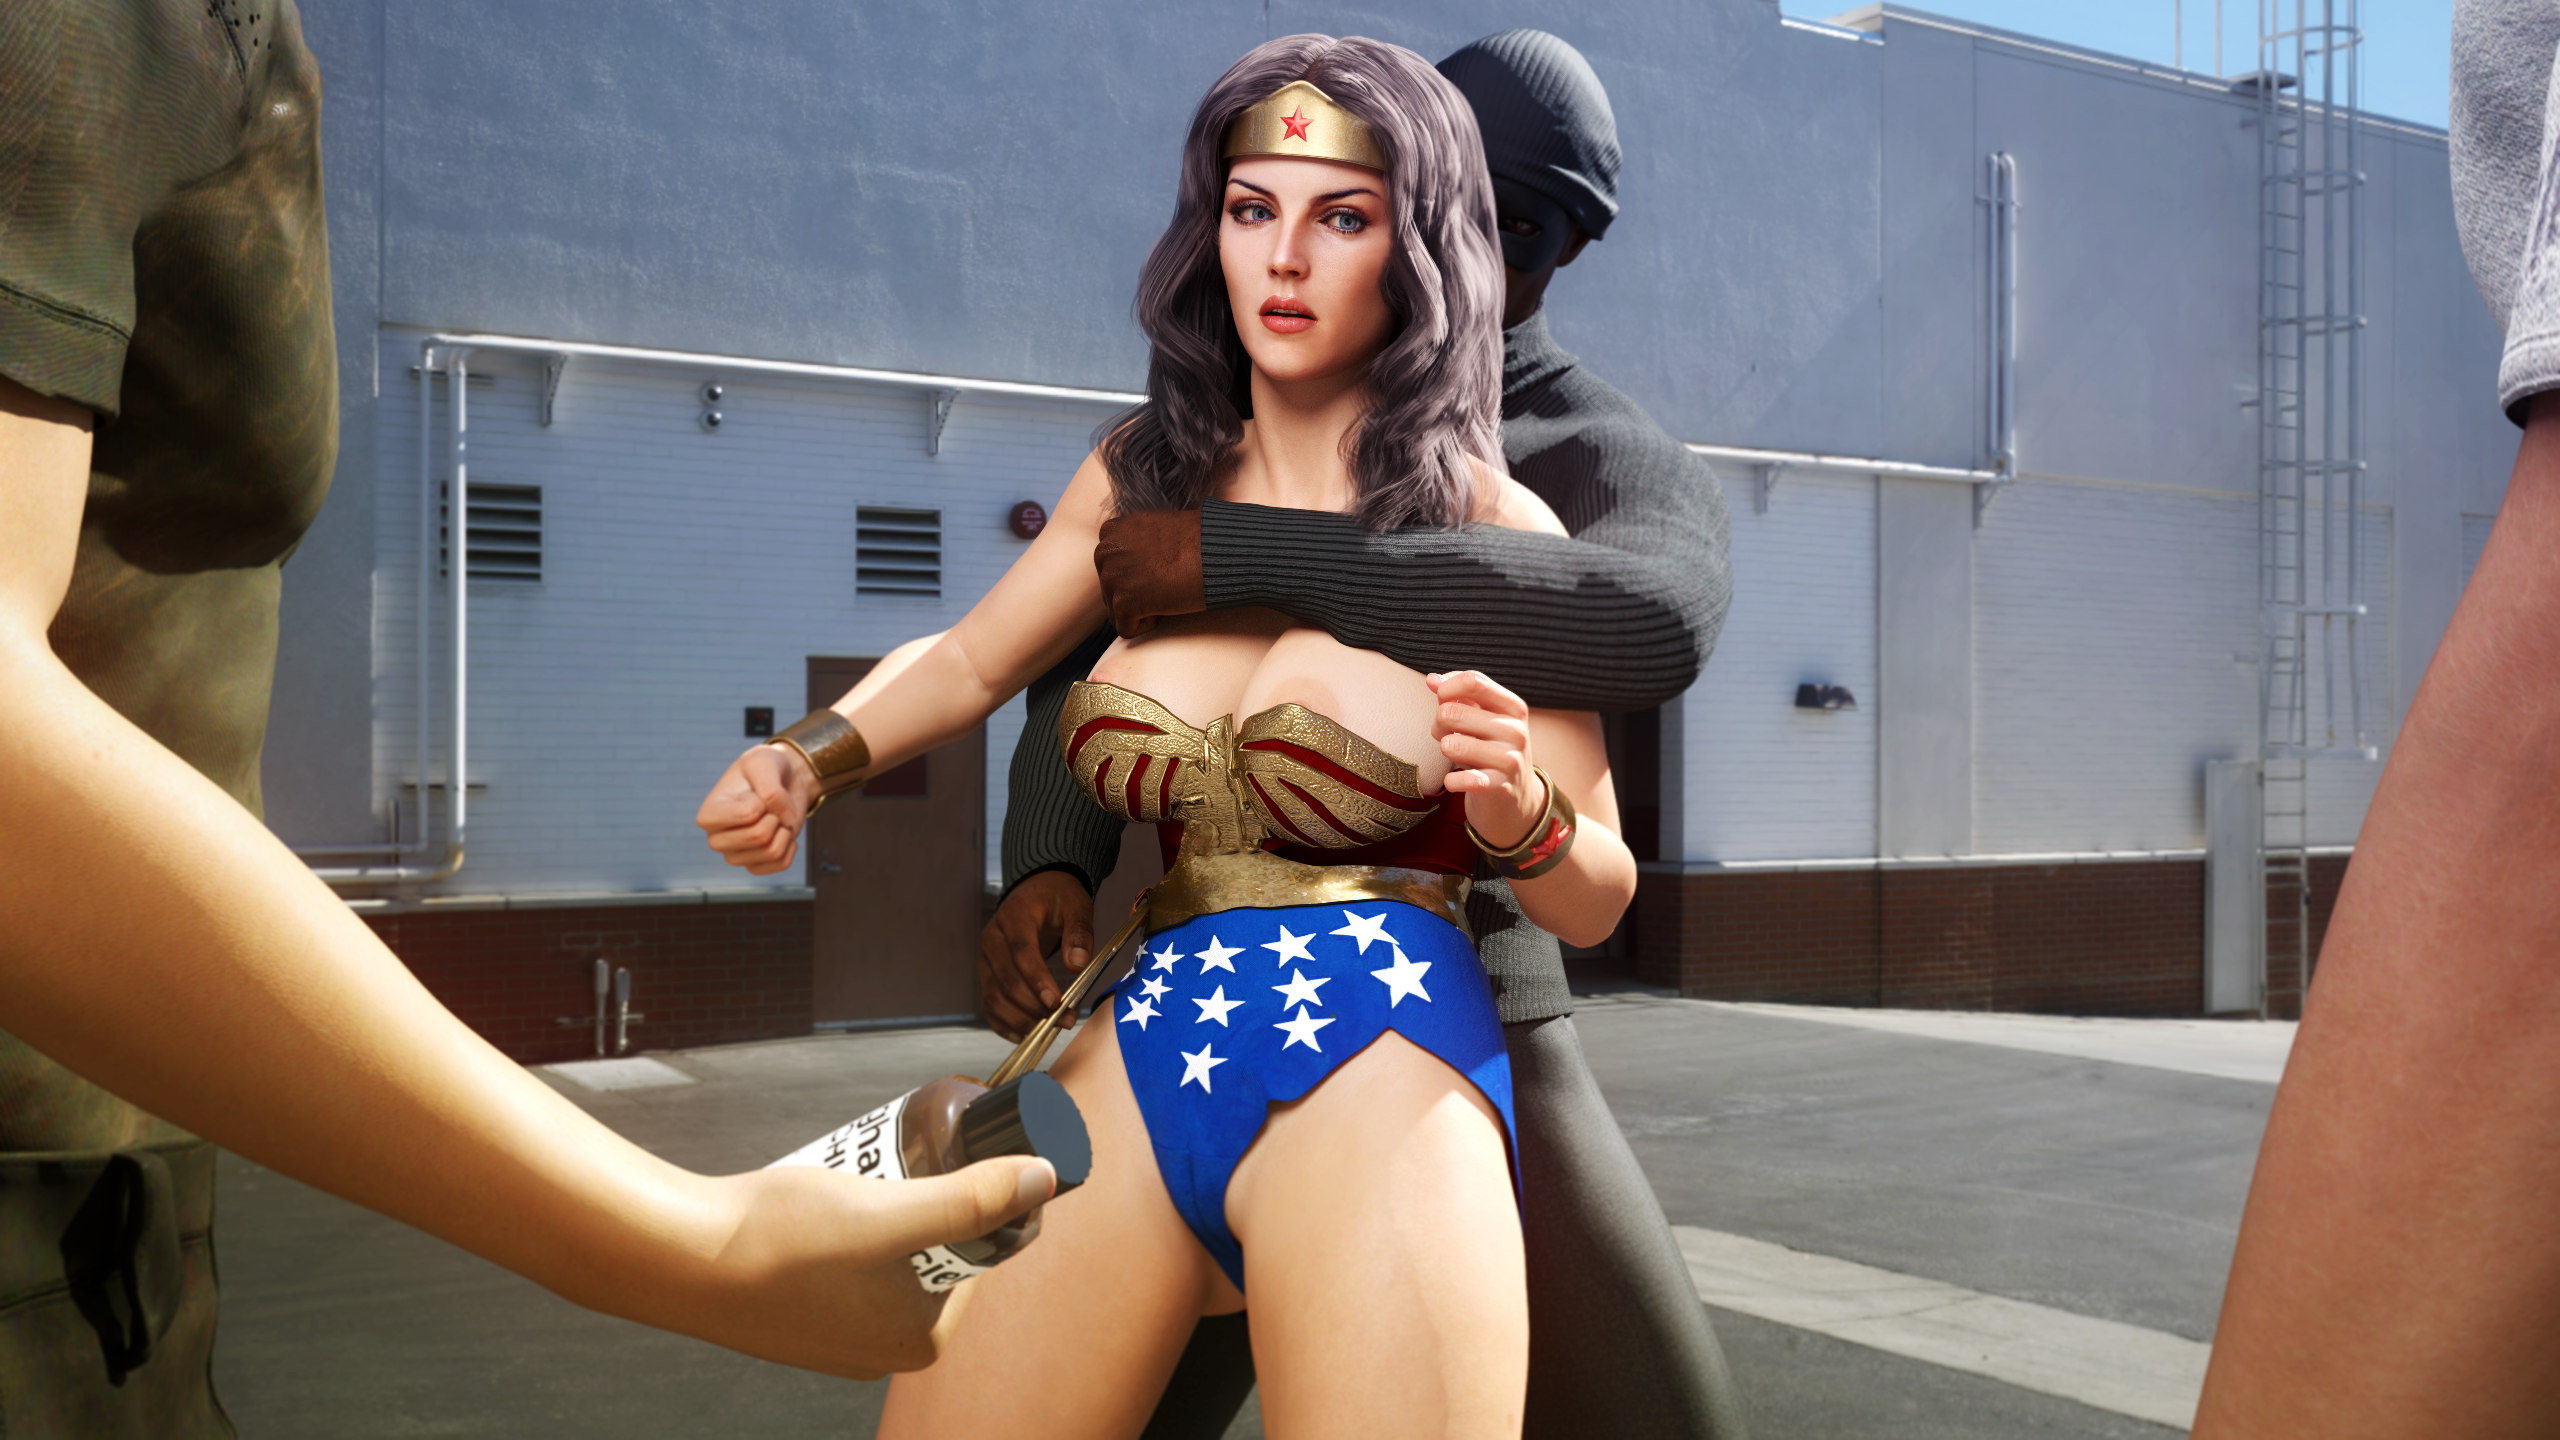 Slushe - Galleries - Wonder Woman in Action